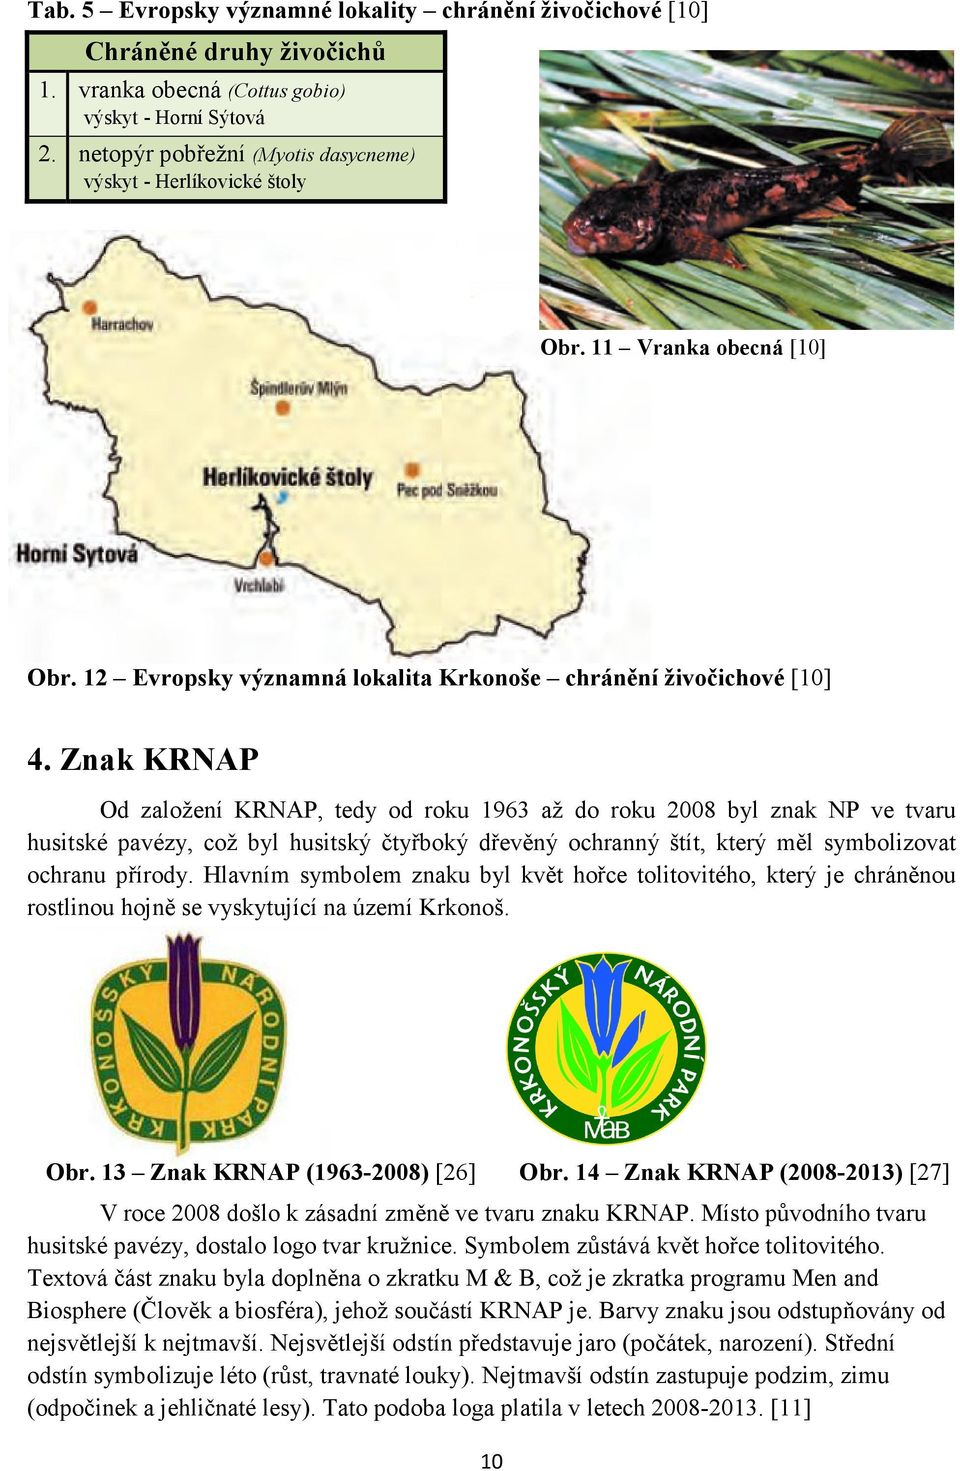 Znak KRNAP Od založení KRNAP, tedy od roku 1963 až do roku 2008 byl znak NP ve tvaru husitské pavézy, což byl husitský čtyřboký dřevěný ochranný štít, který měl symbolizovat ochranu přírody.